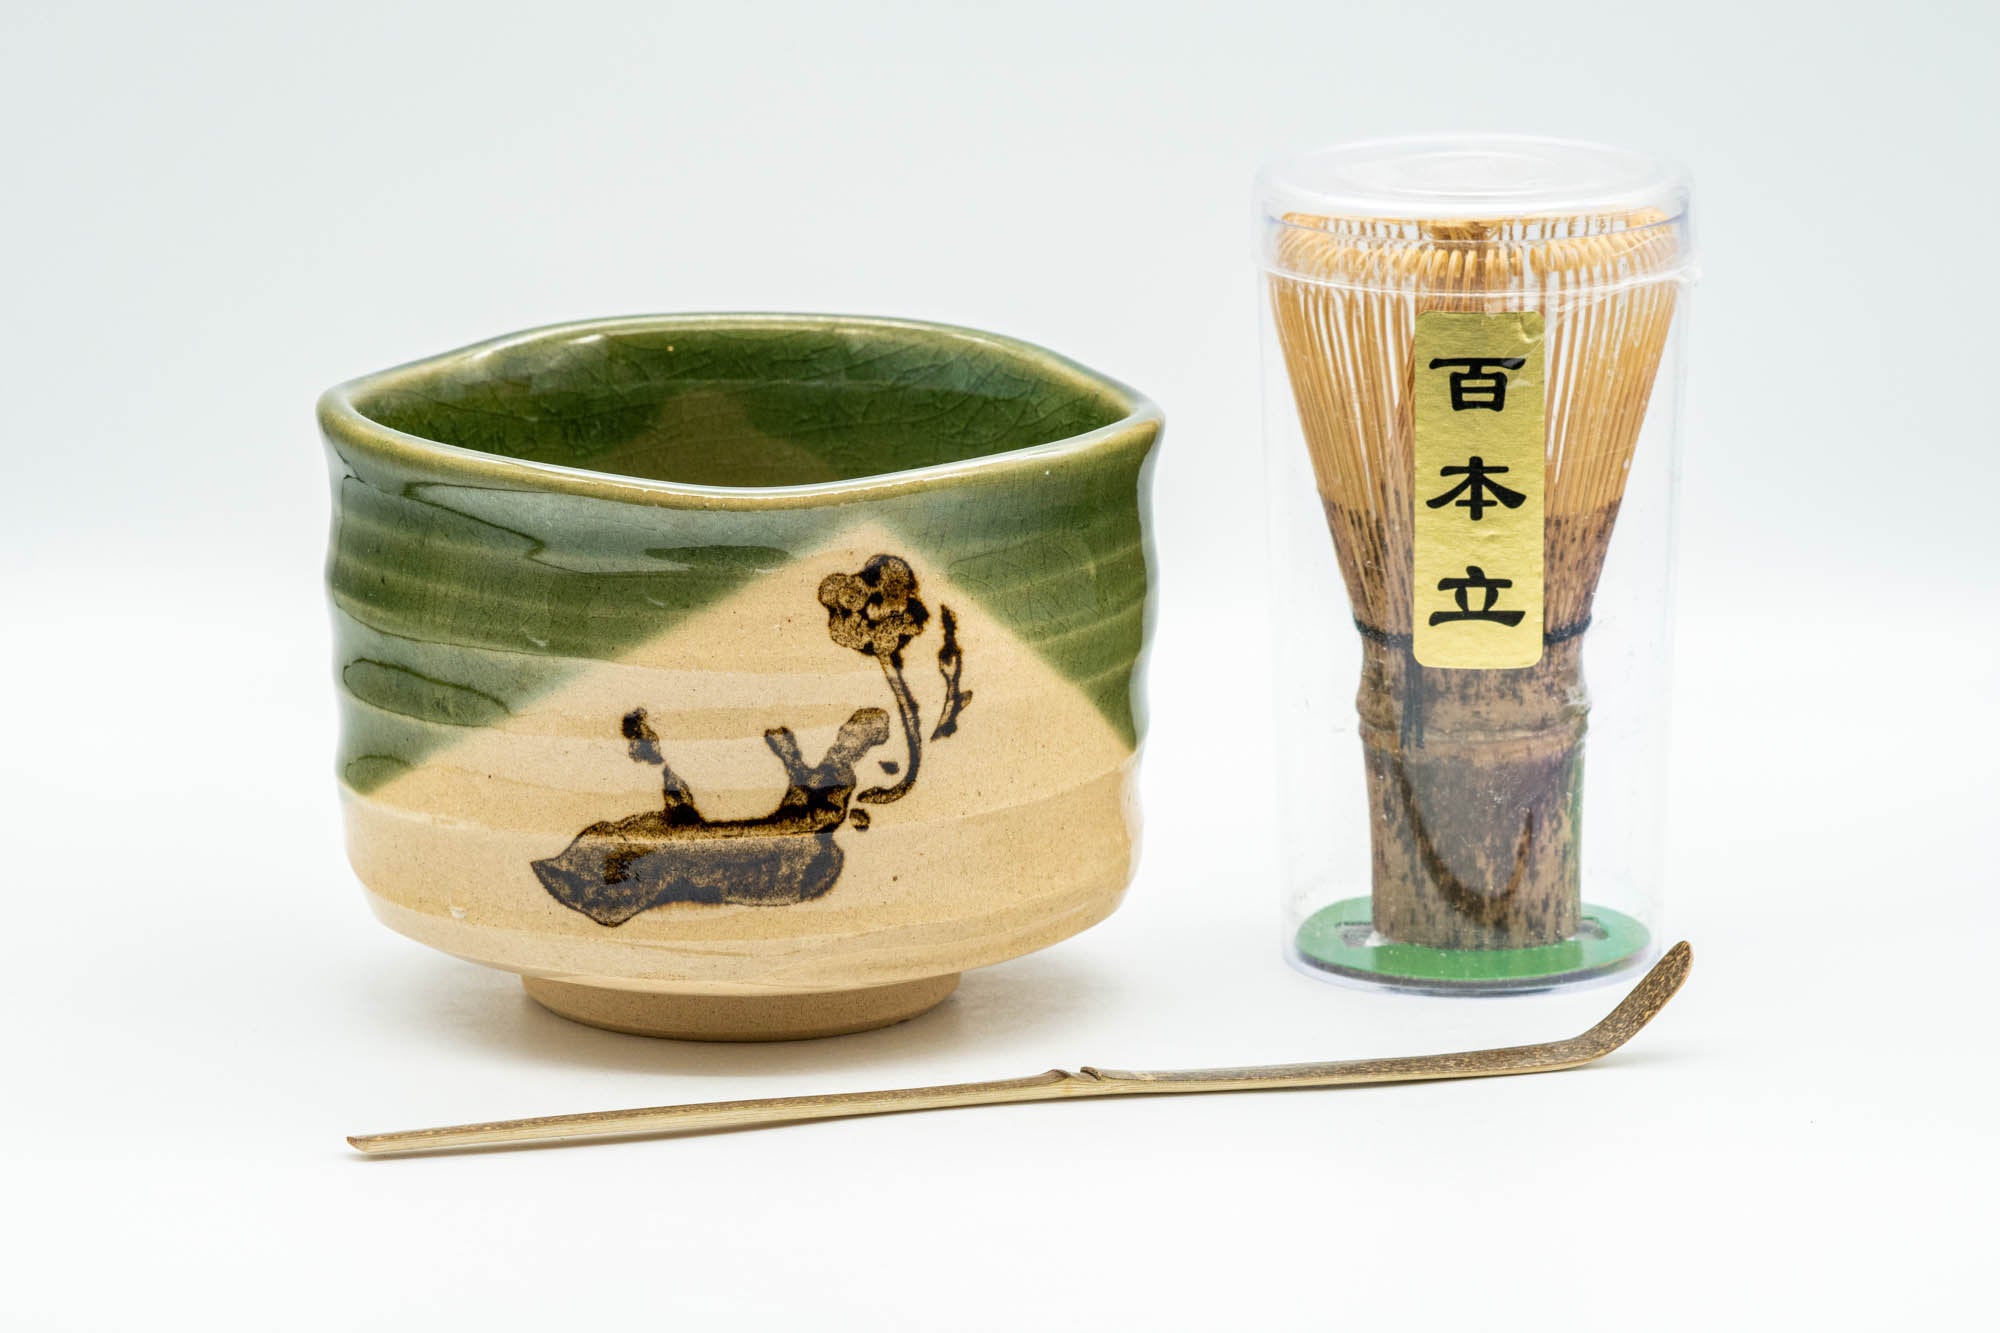 Japanese Matcha Set - Oribe-yaki Chawan with Bamboo Chasen Whisk and Chashaku Scoop - 450ml